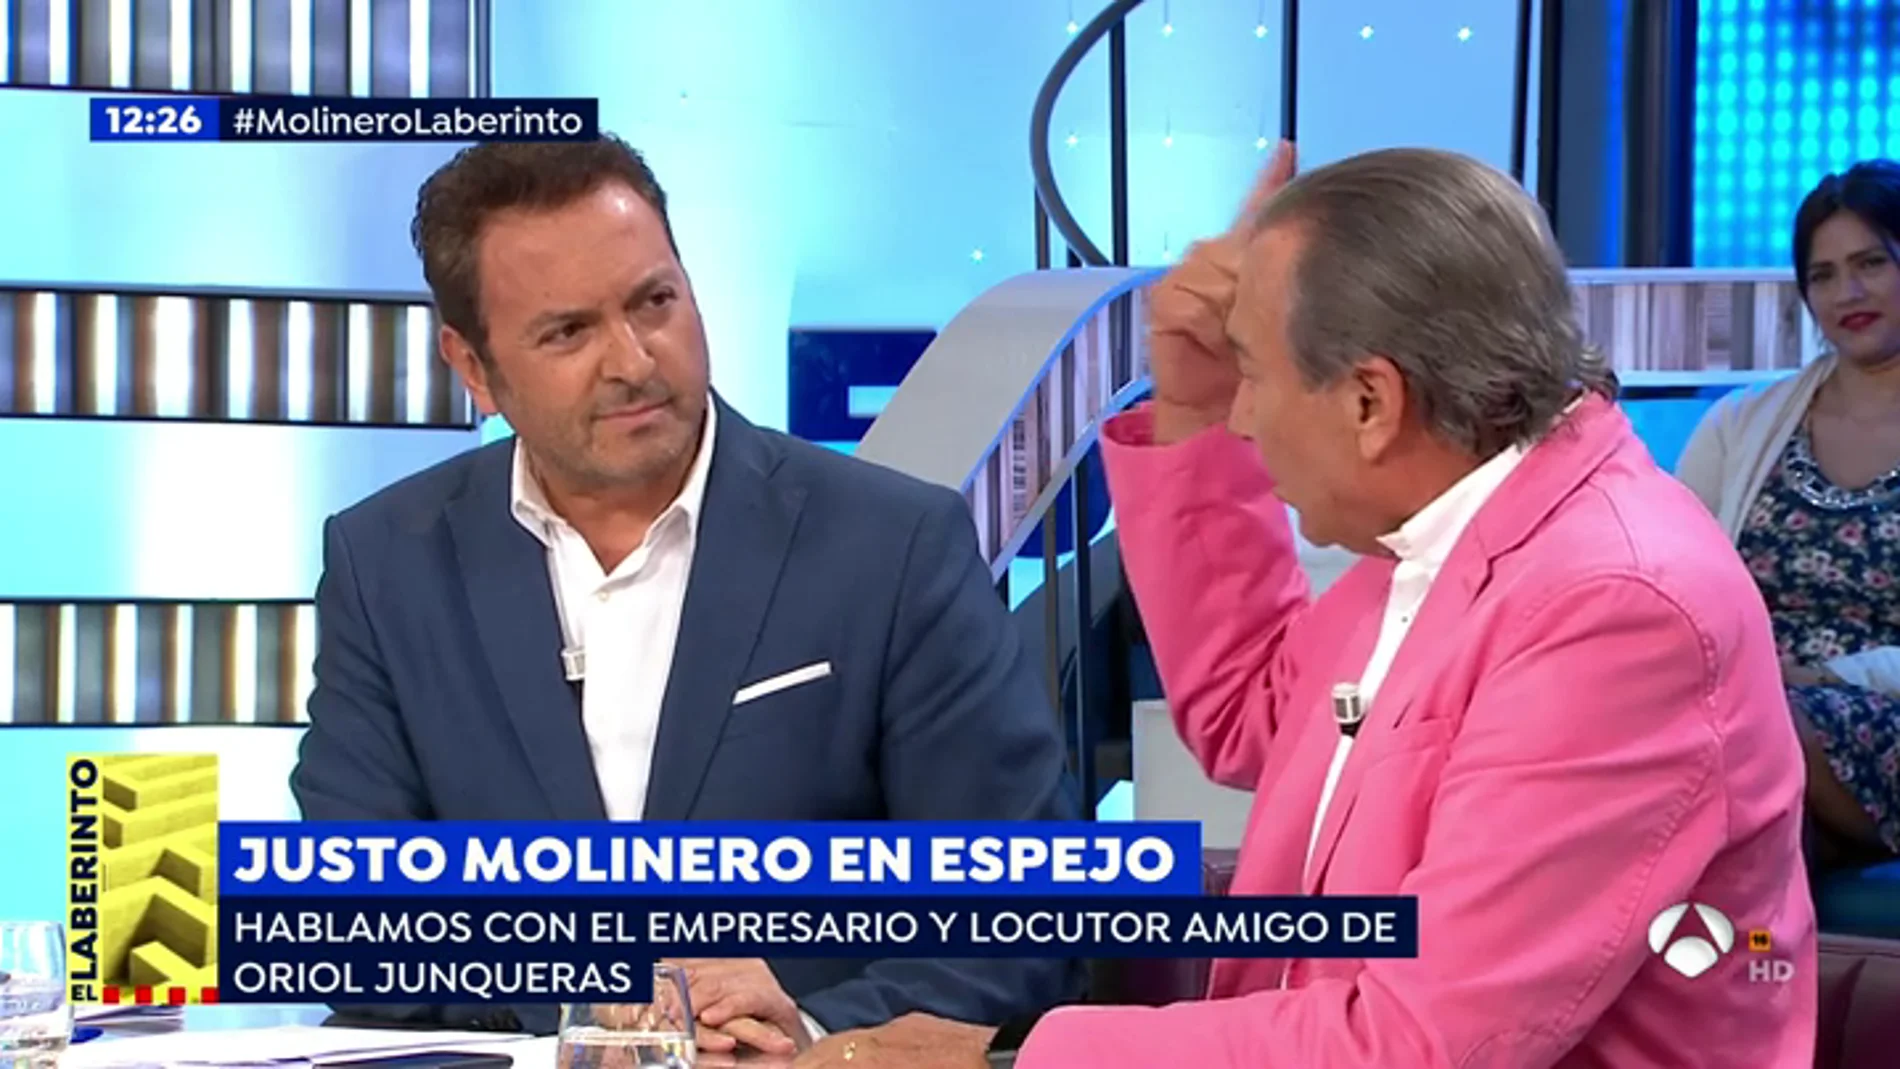 Susanna Griso media en la bronca entre Albert Castillón y Justo Molinero: "No le doy nada porque no se merece una mierda"